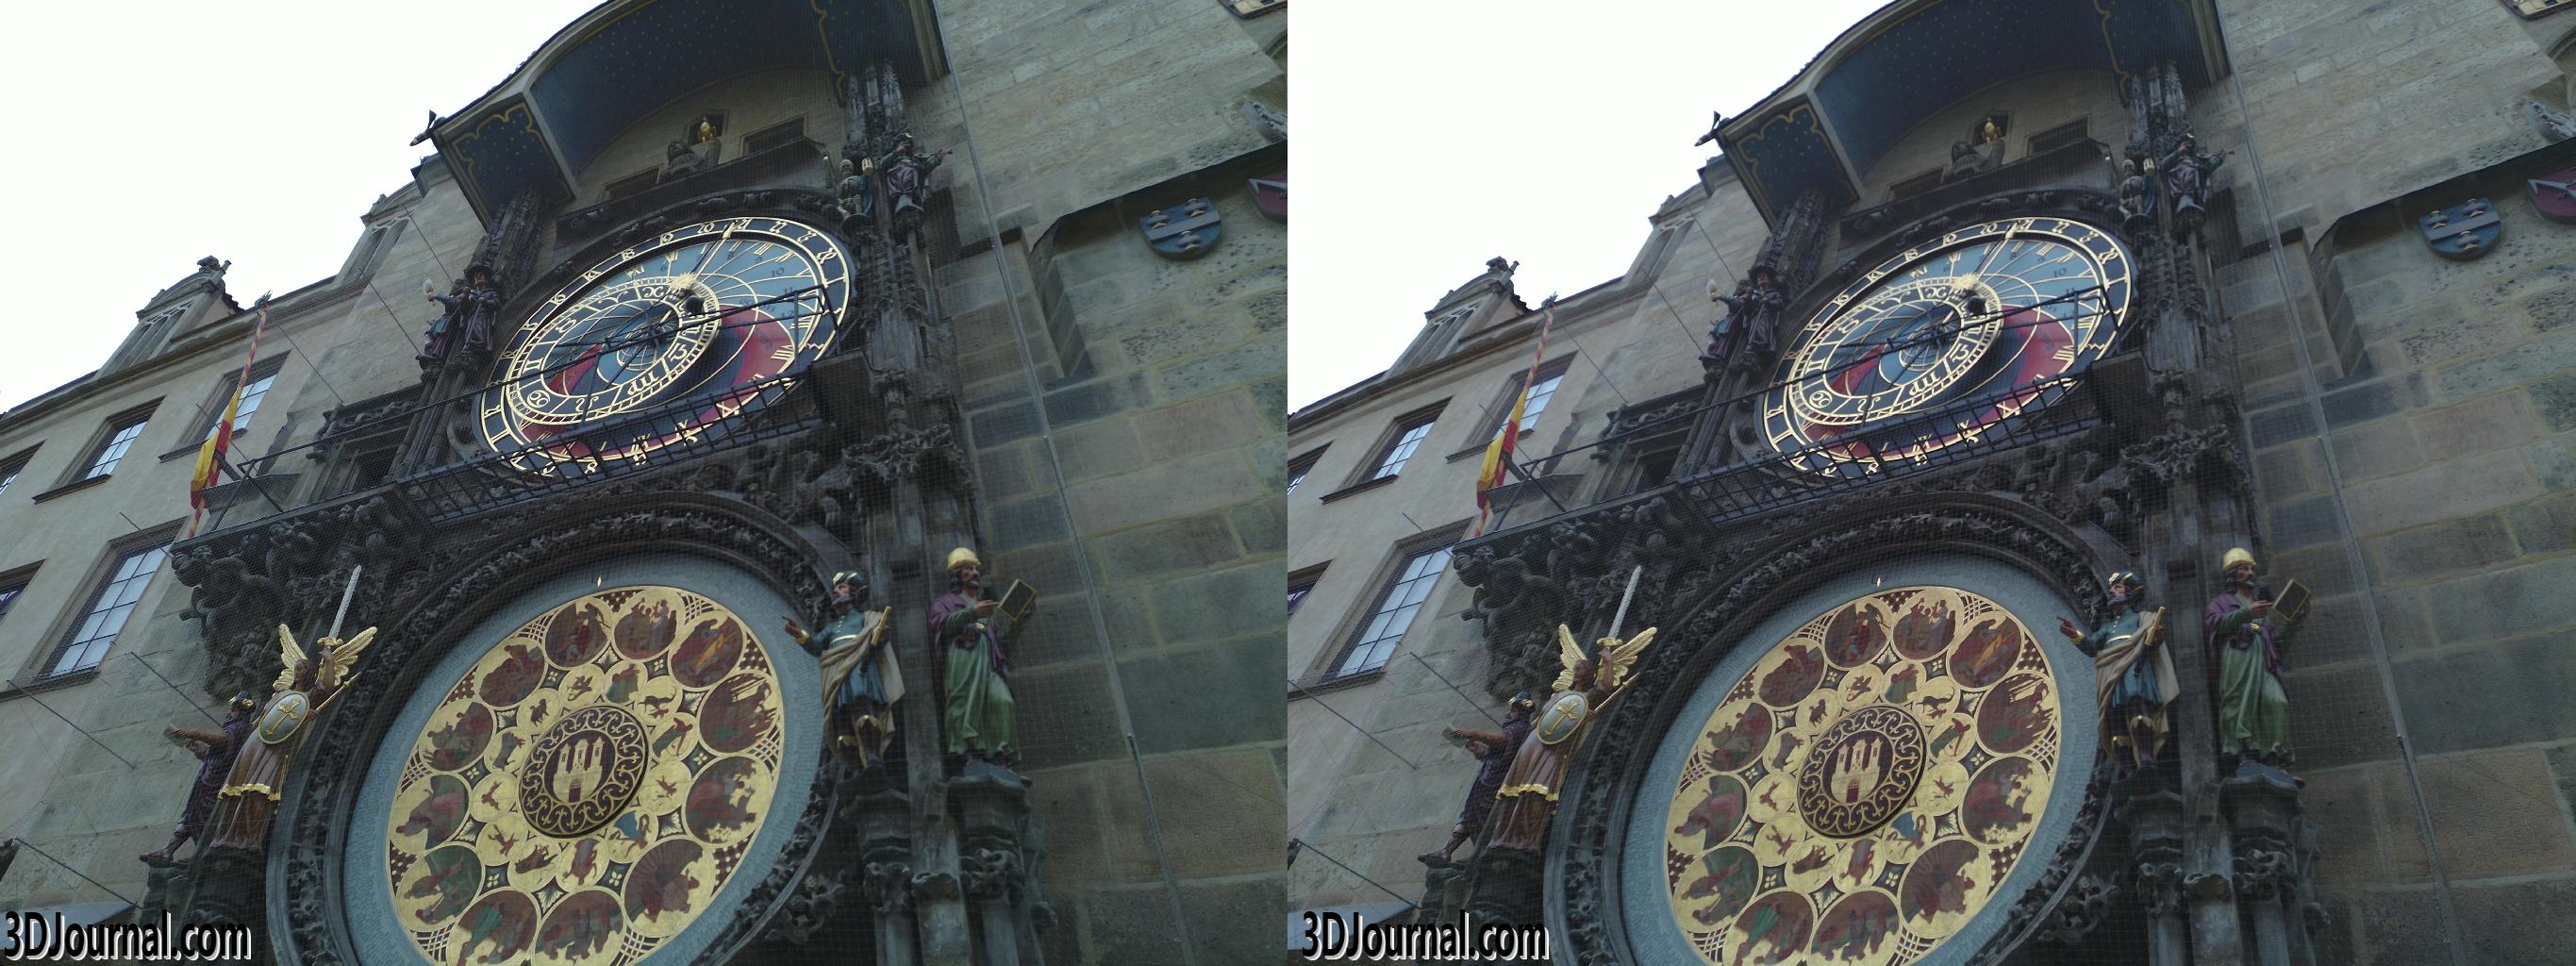 Altstädter Ring in Prag - Altstädter Uhr